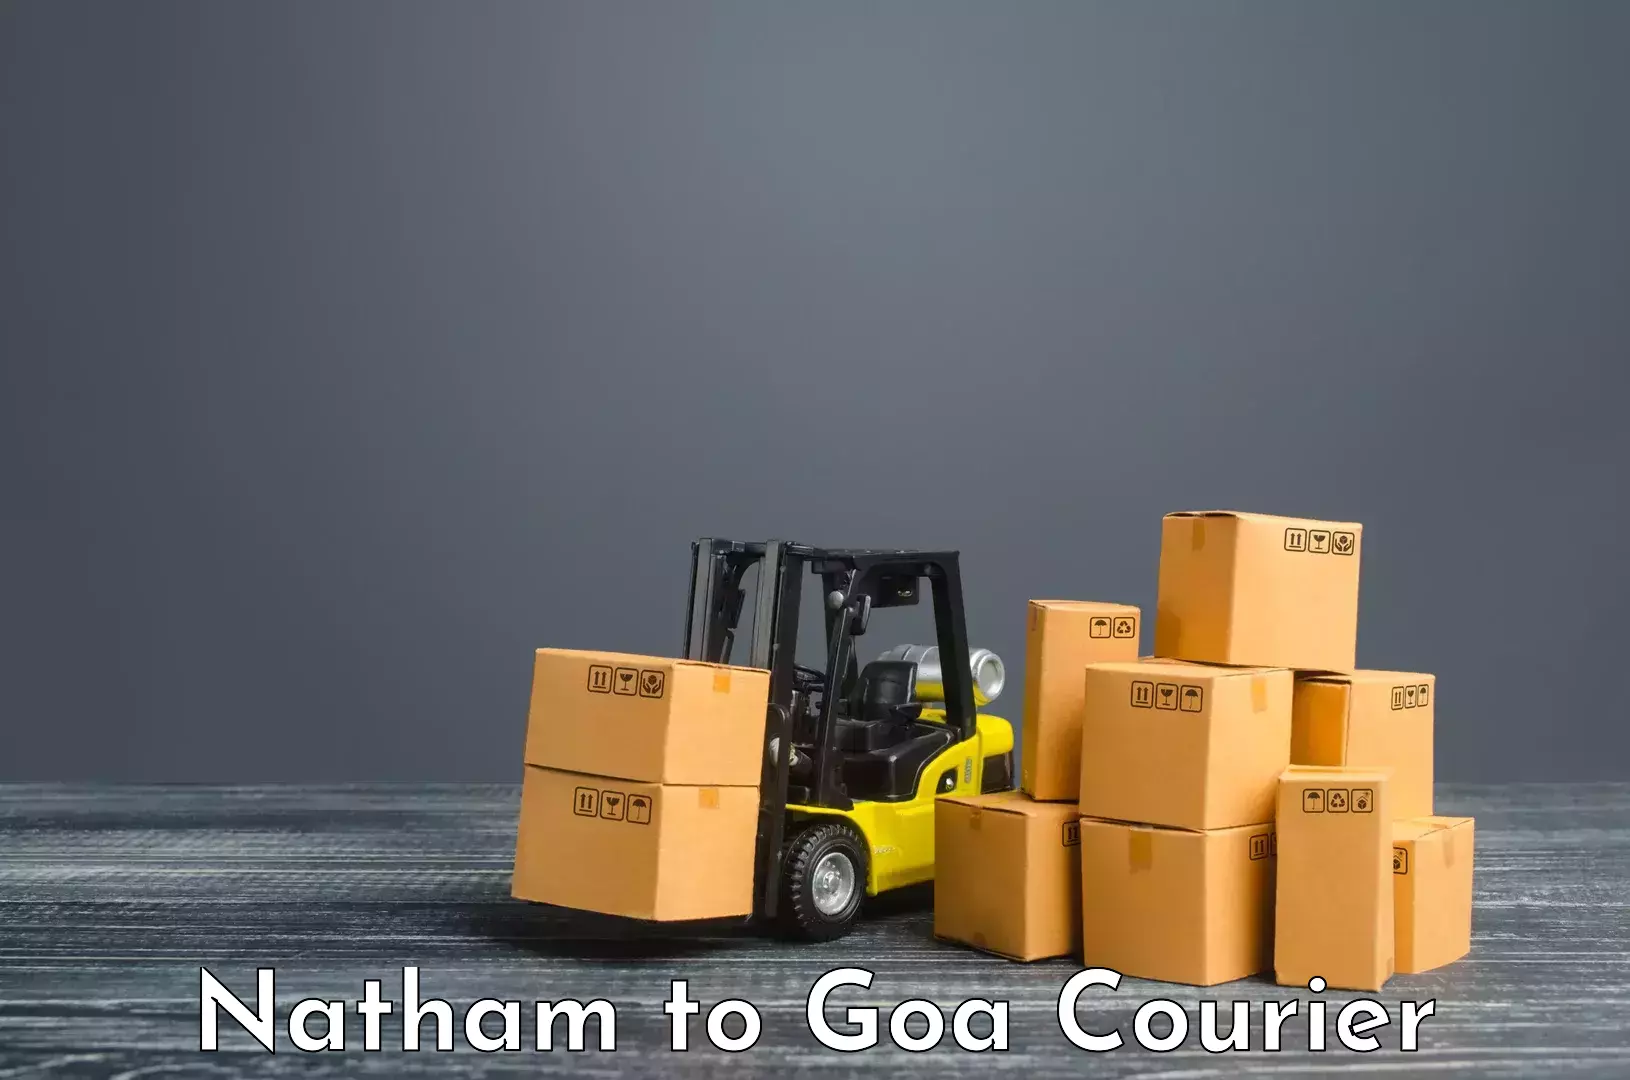 Residential courier service Natham to Mormugao Port